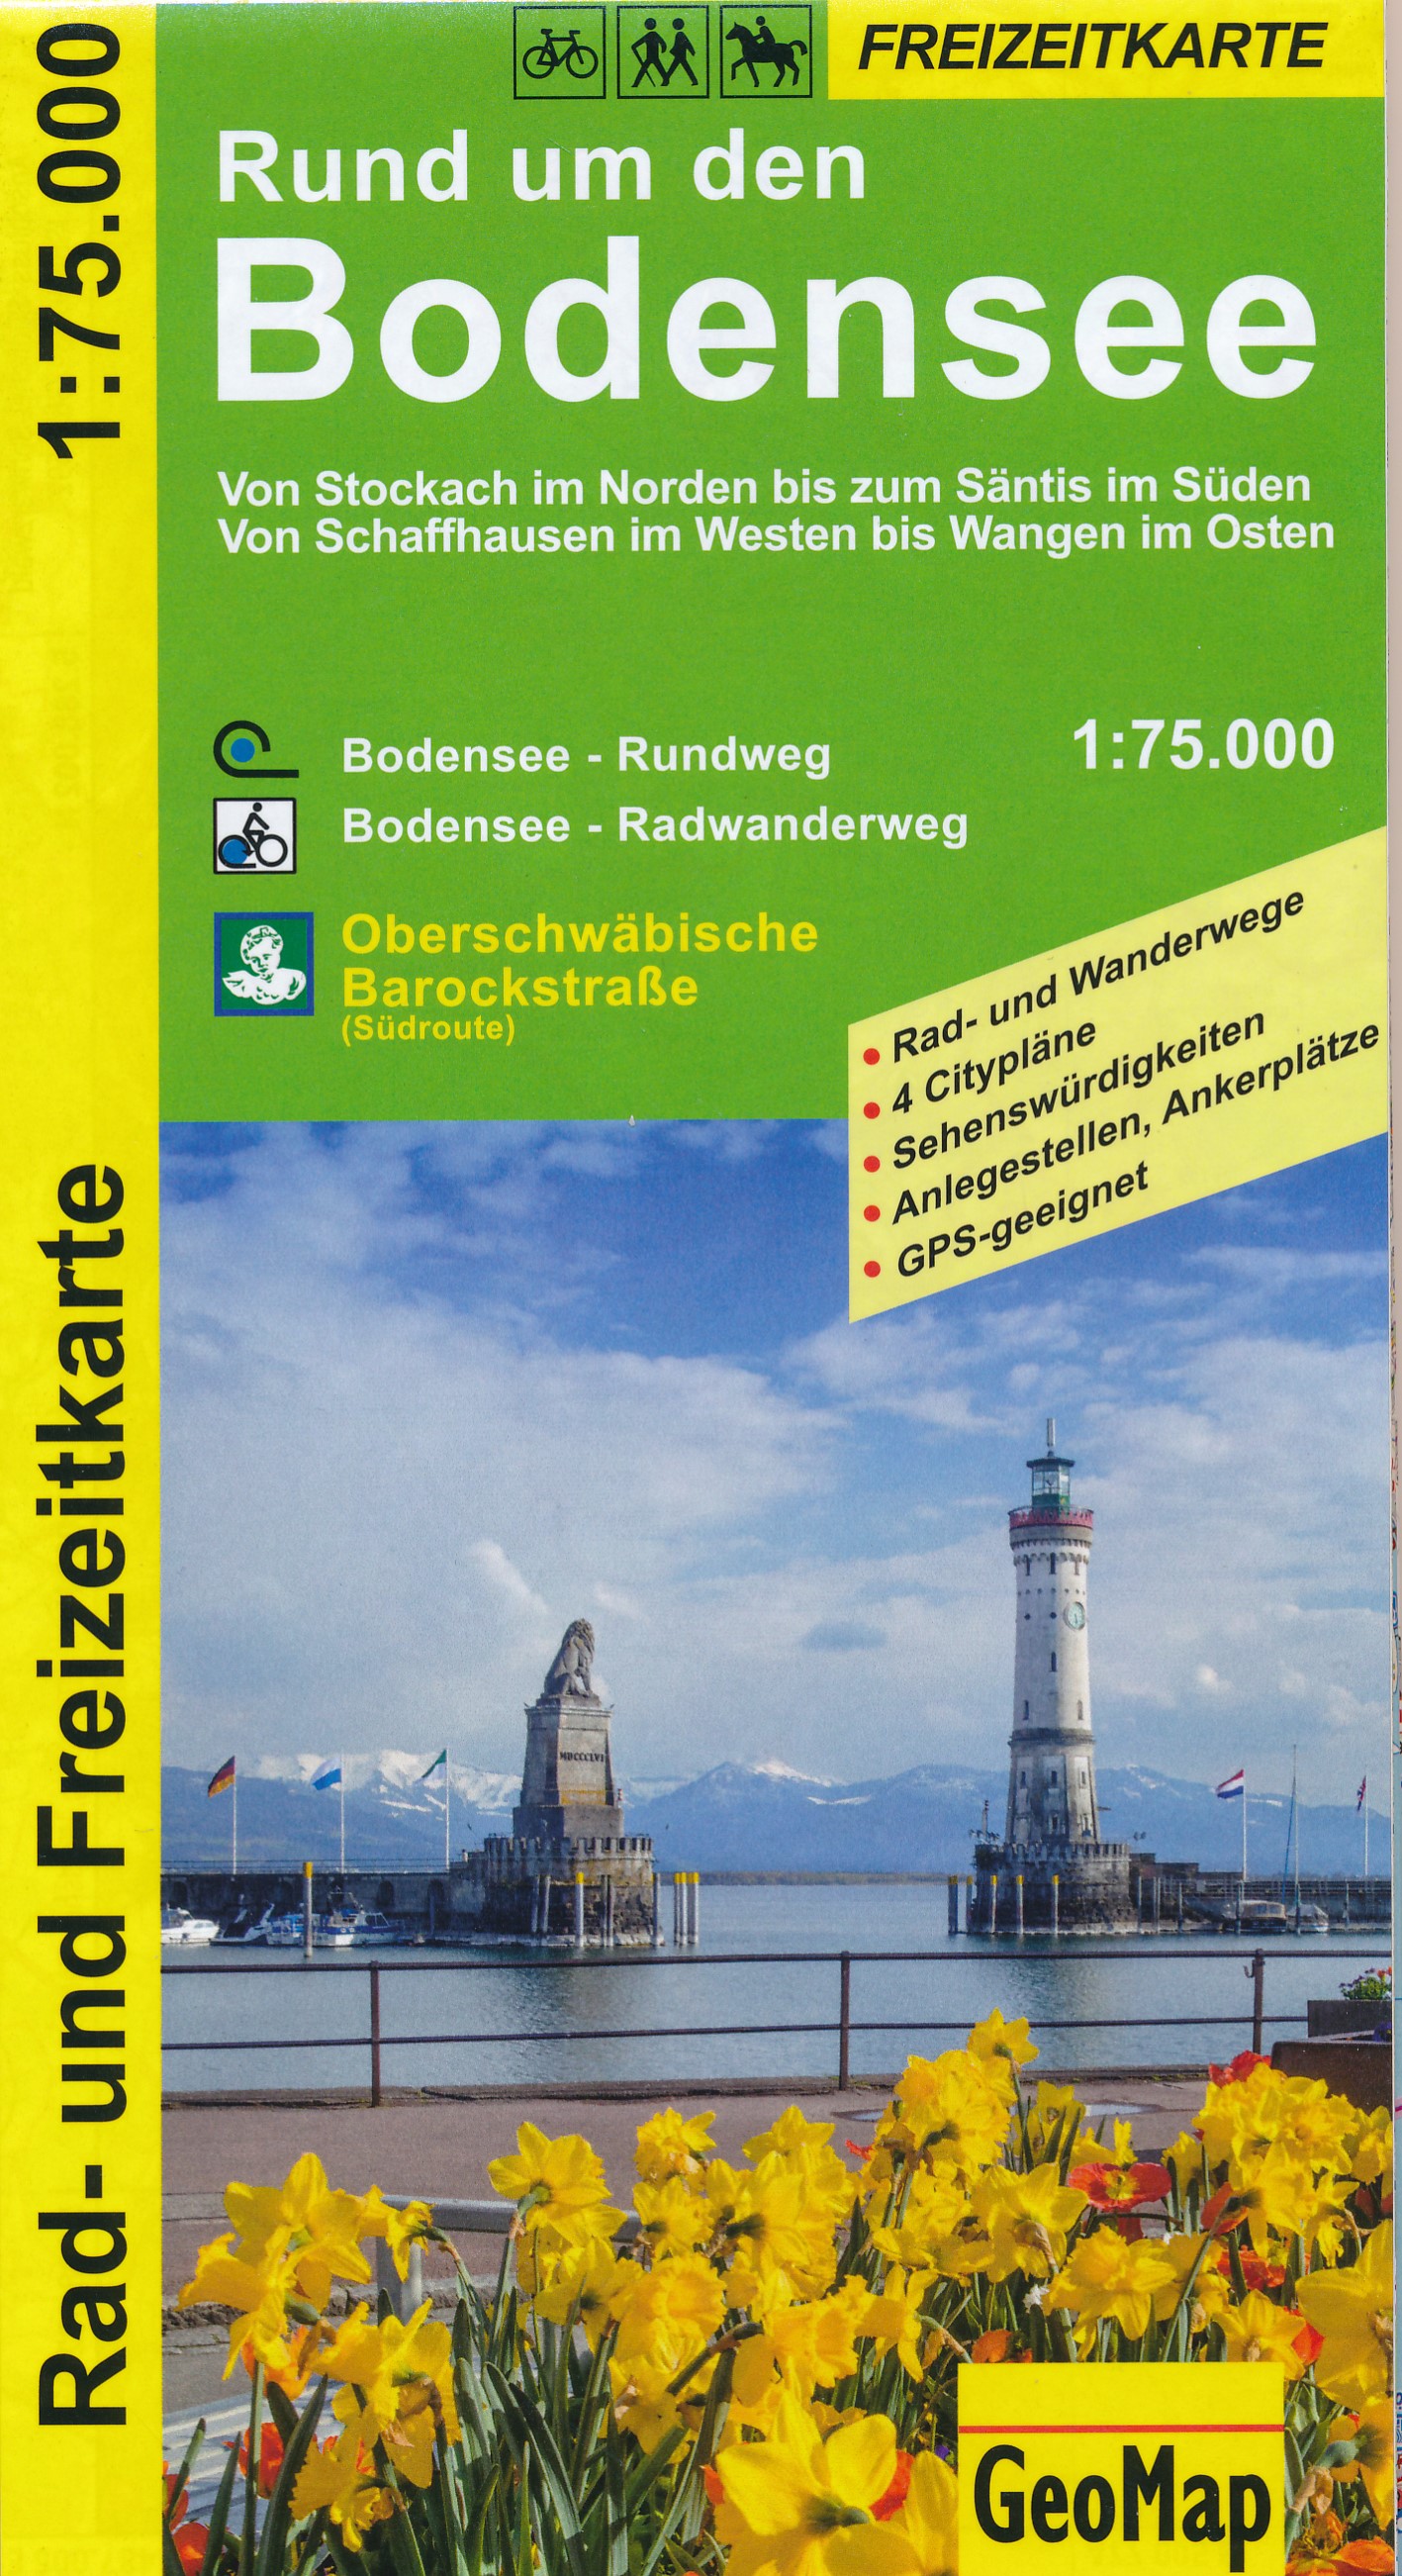 Online bestellen: Wandelkaart - Fietskaart Rund um den Bodensee | GeoMap